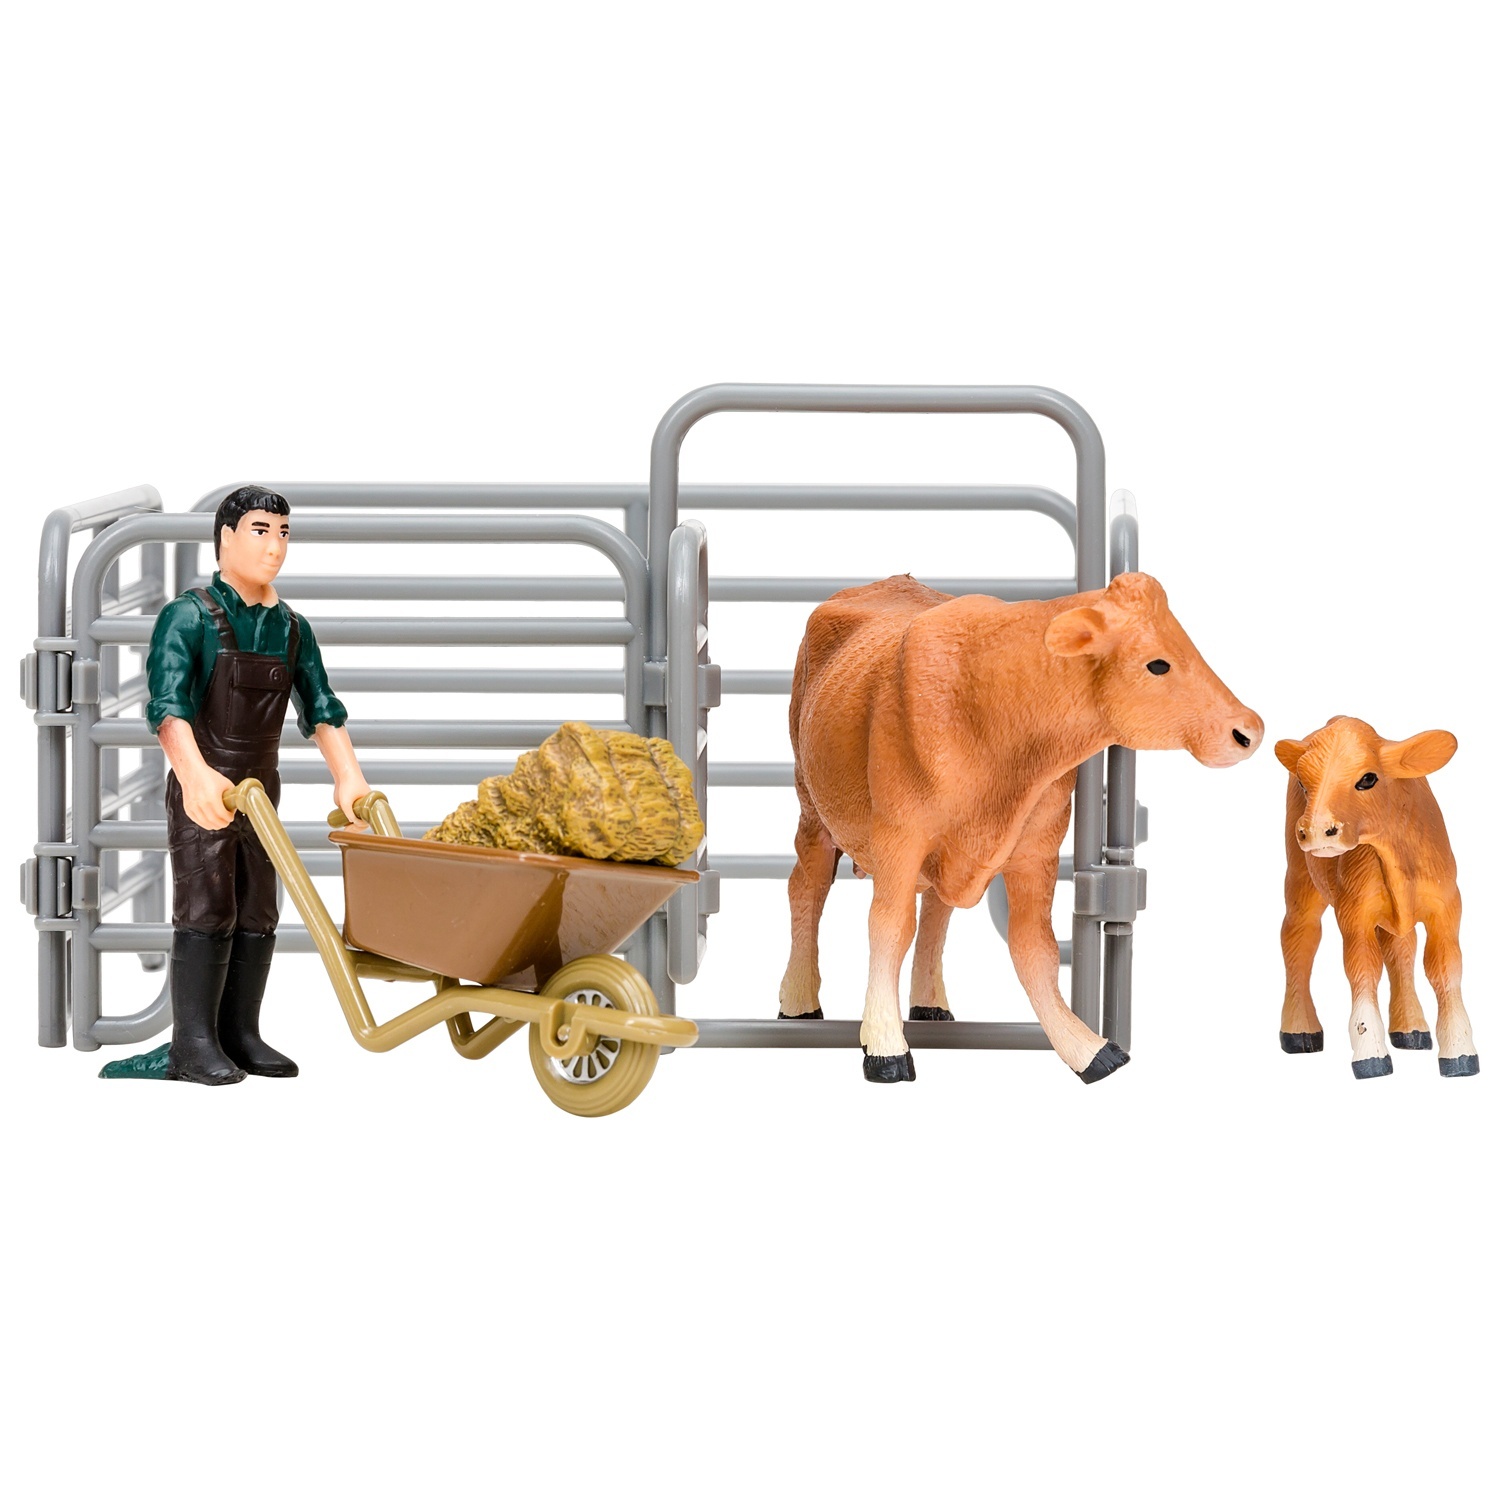 фото Фигурка masai mara 6 предметов, (фермер, корова с теленком, ограждение-загон, инвентарь)